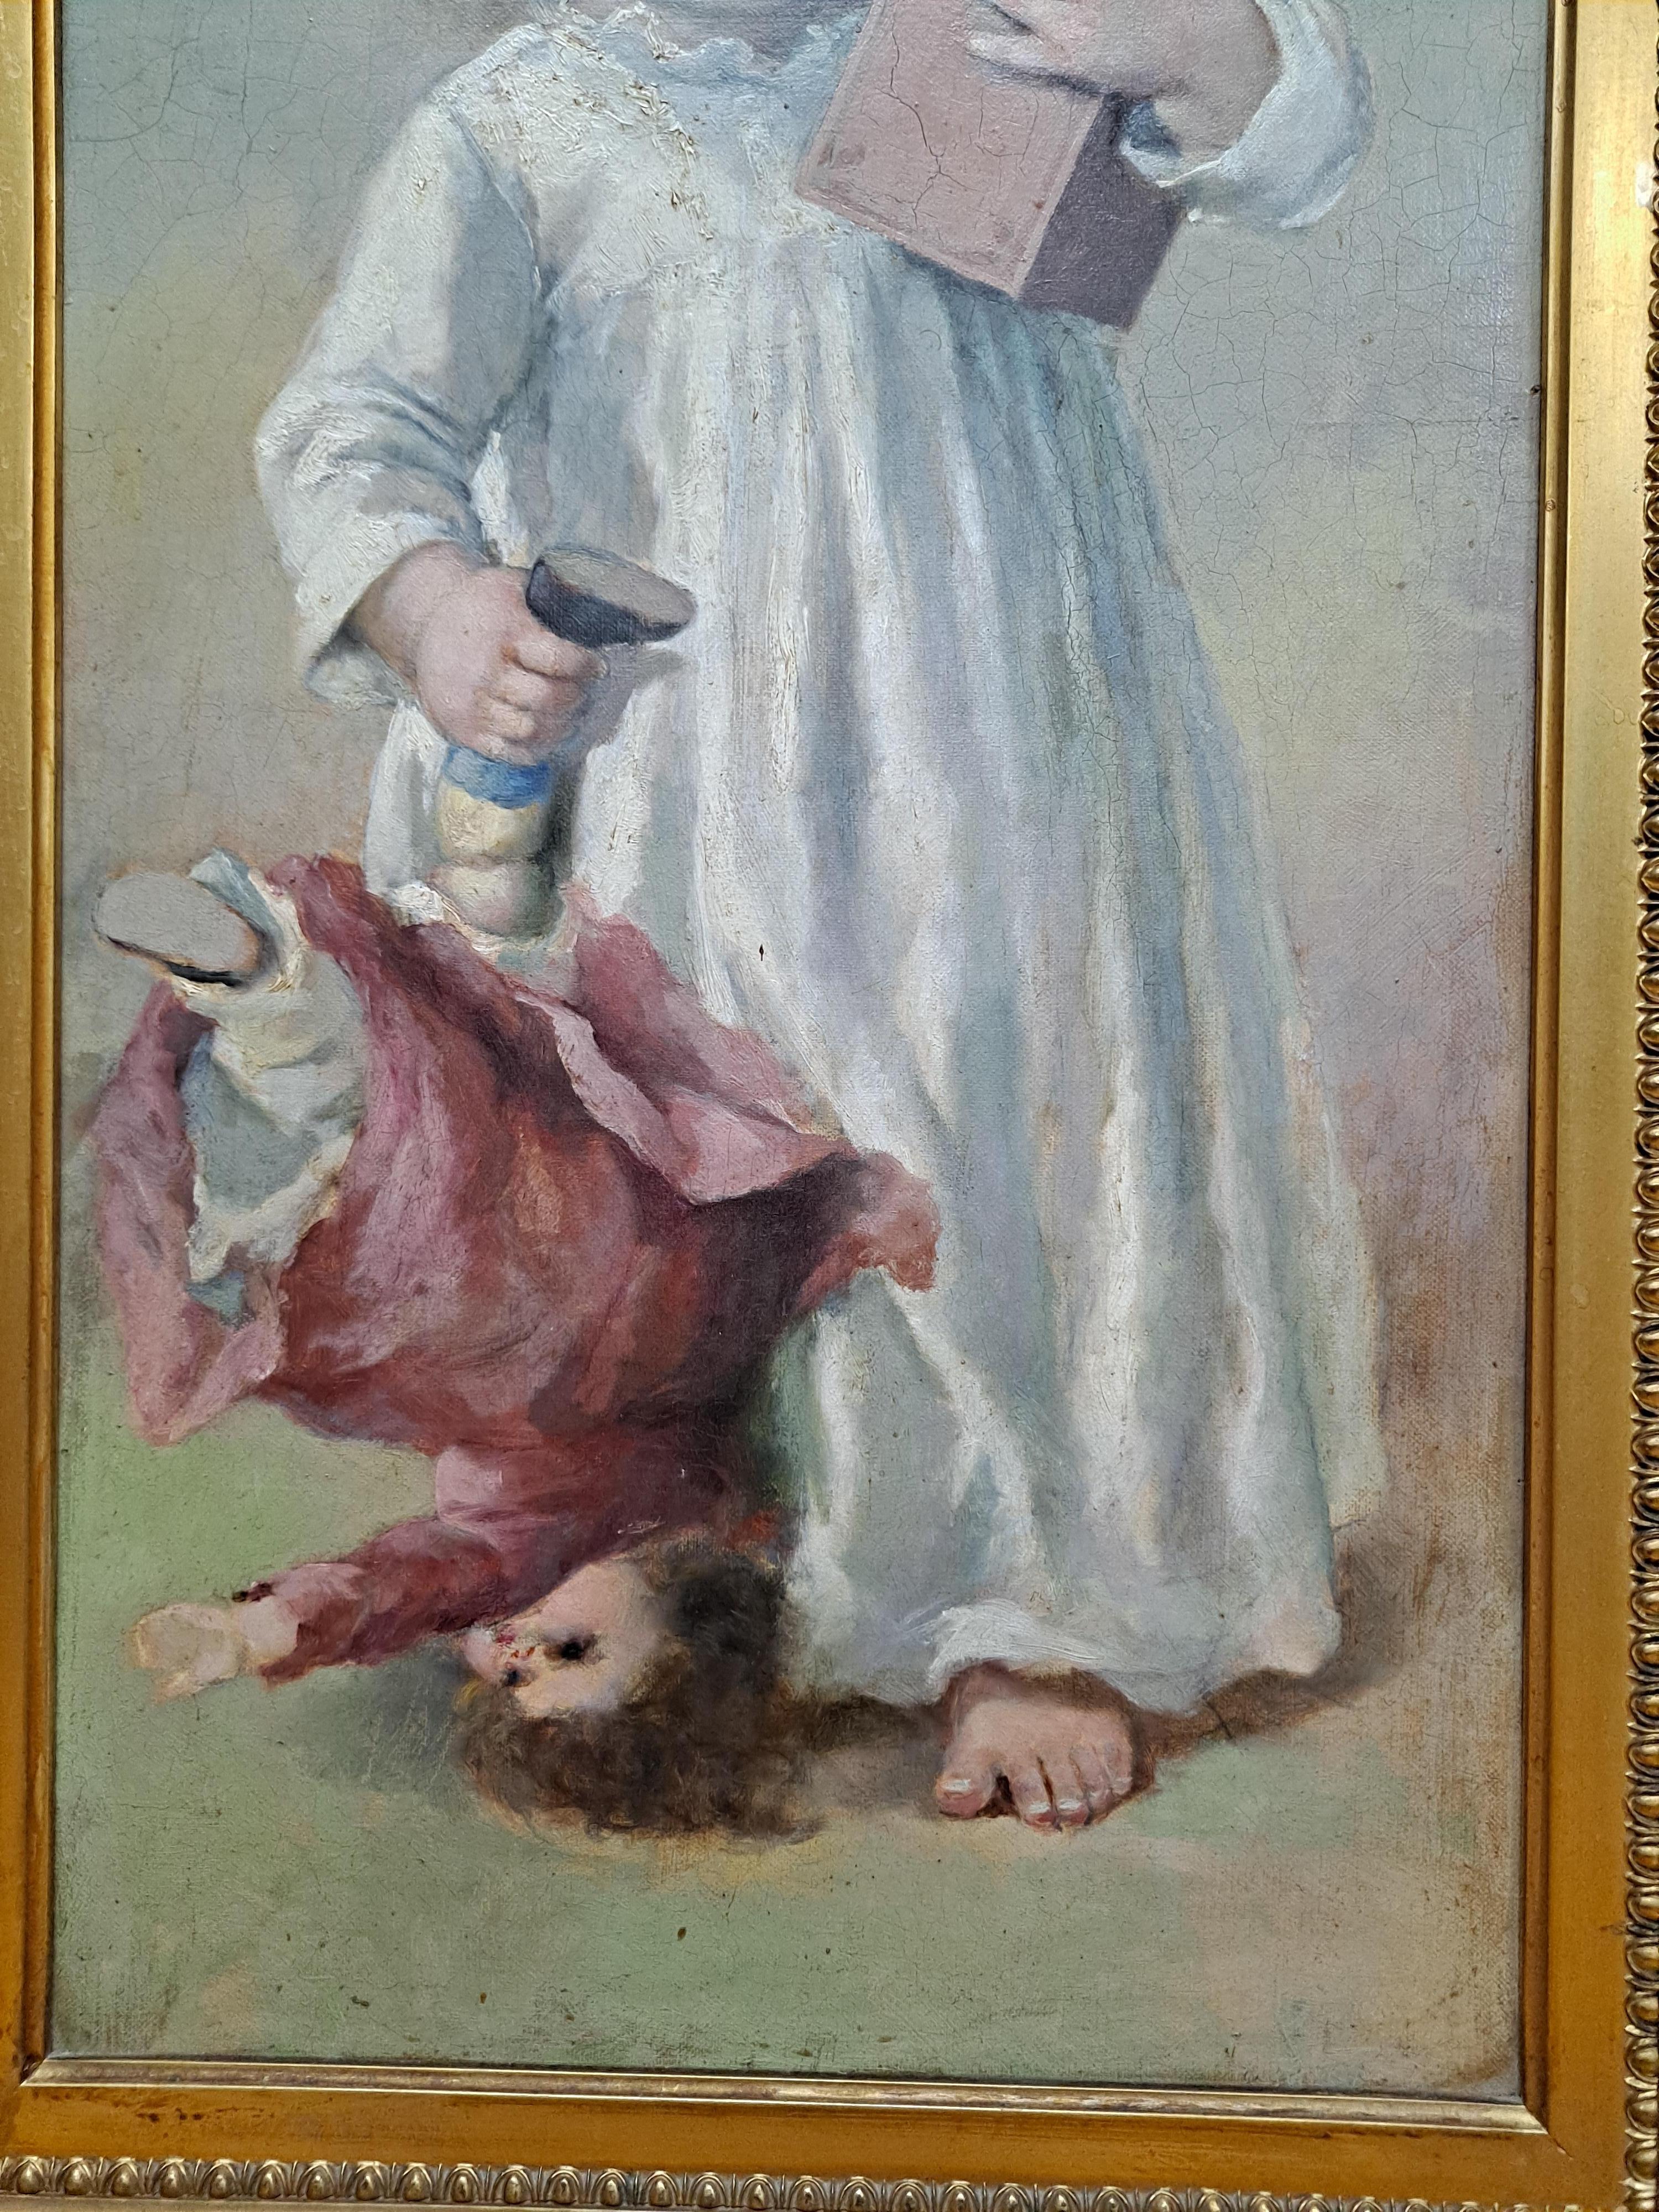 19e siècle Tableau de portrait d'une jeune fille avec une poupée et un jouet pop-up

Belle sculpture dans un cadre doré

Huile sur toile

14 x 28 sans cadre

23,5 x 37,5 encadré